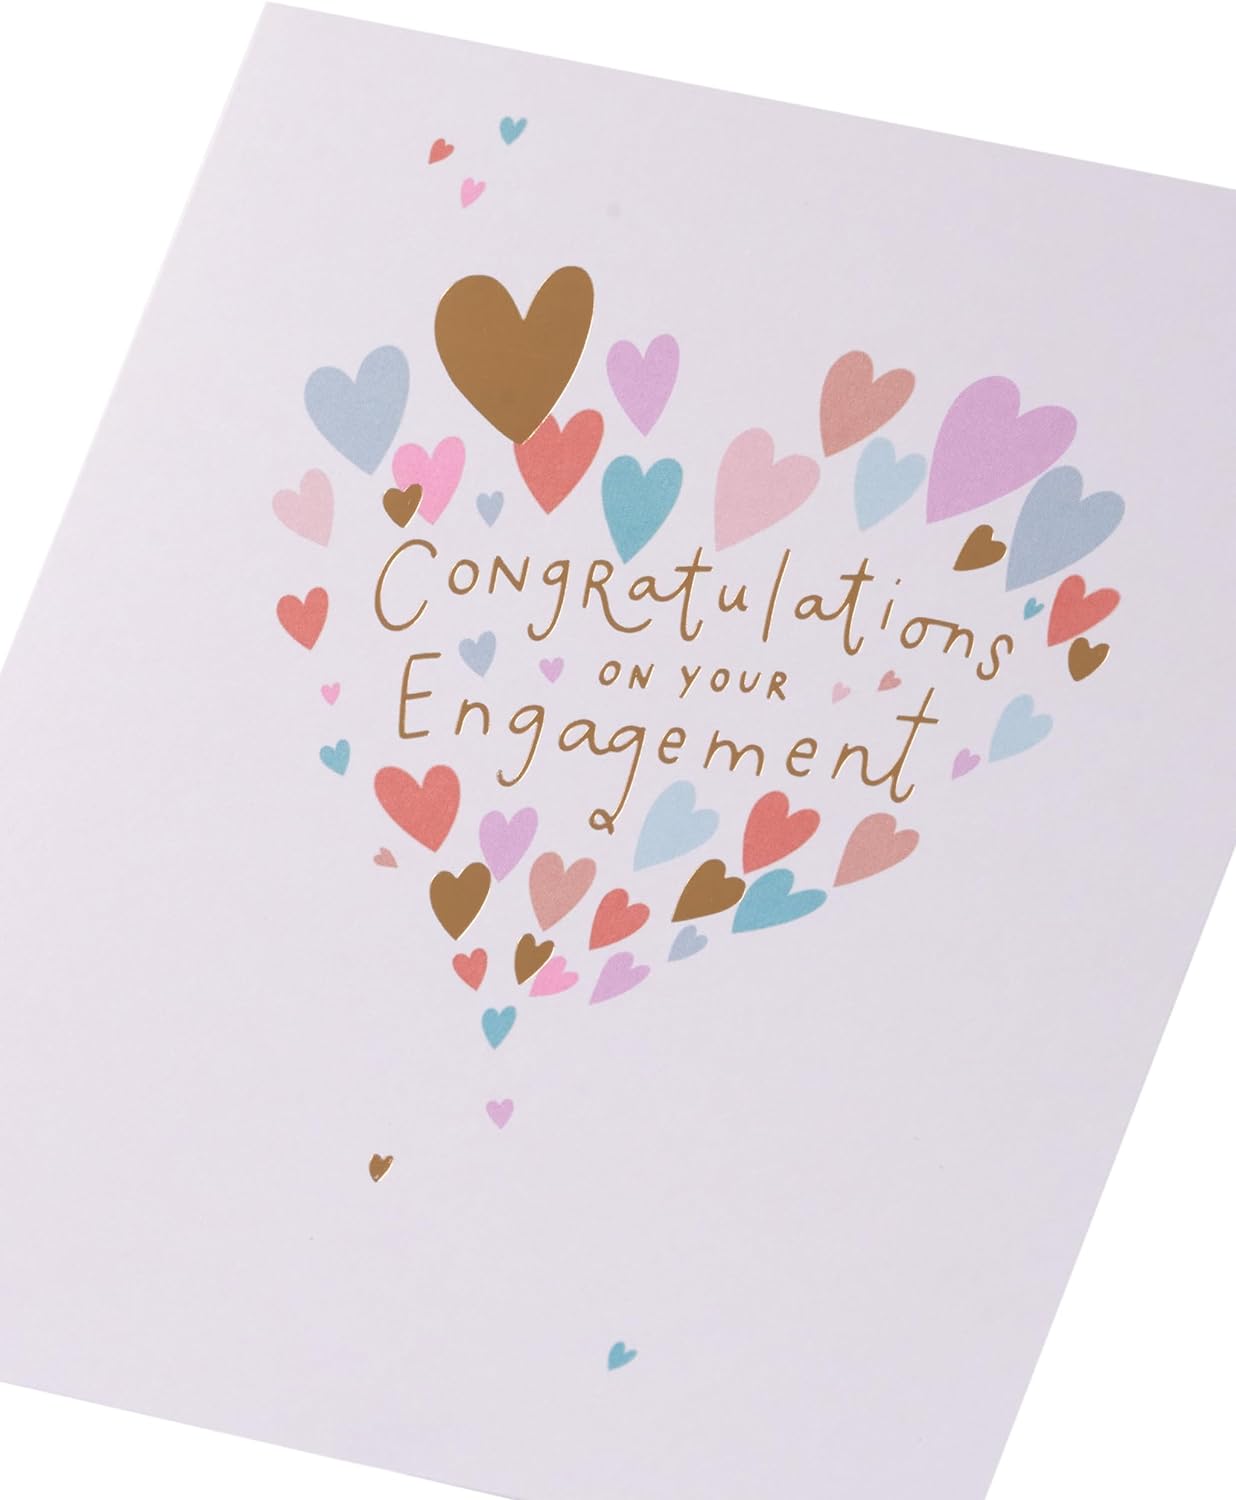 Mini Hearts Design Engagement Congratulations Card